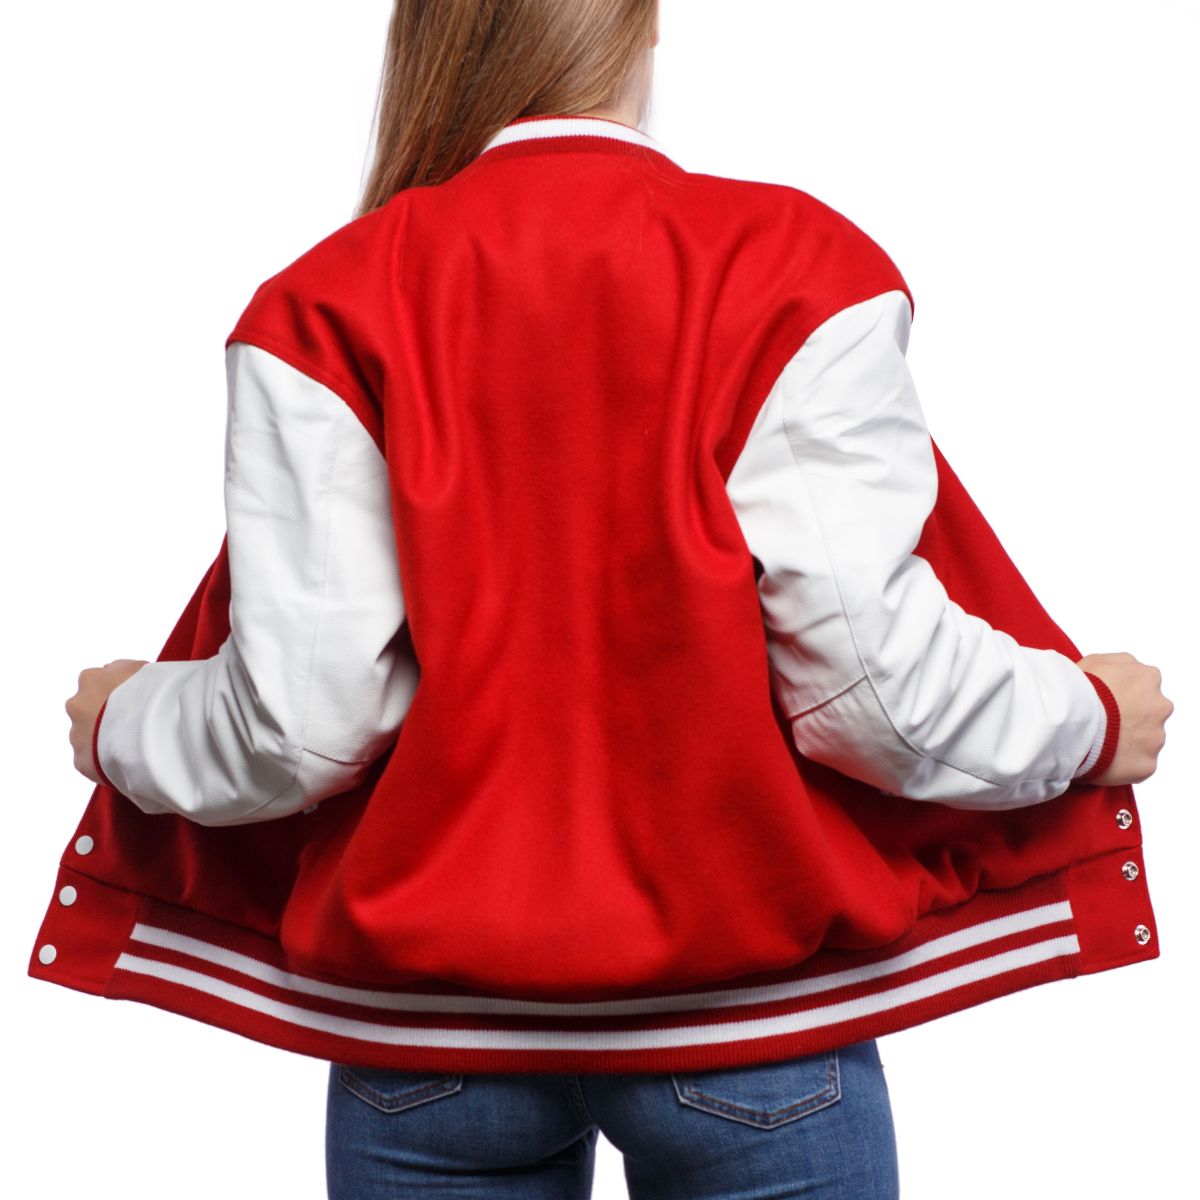 Varsity Jacket Red Wool Letterman's Coat Women's Size 